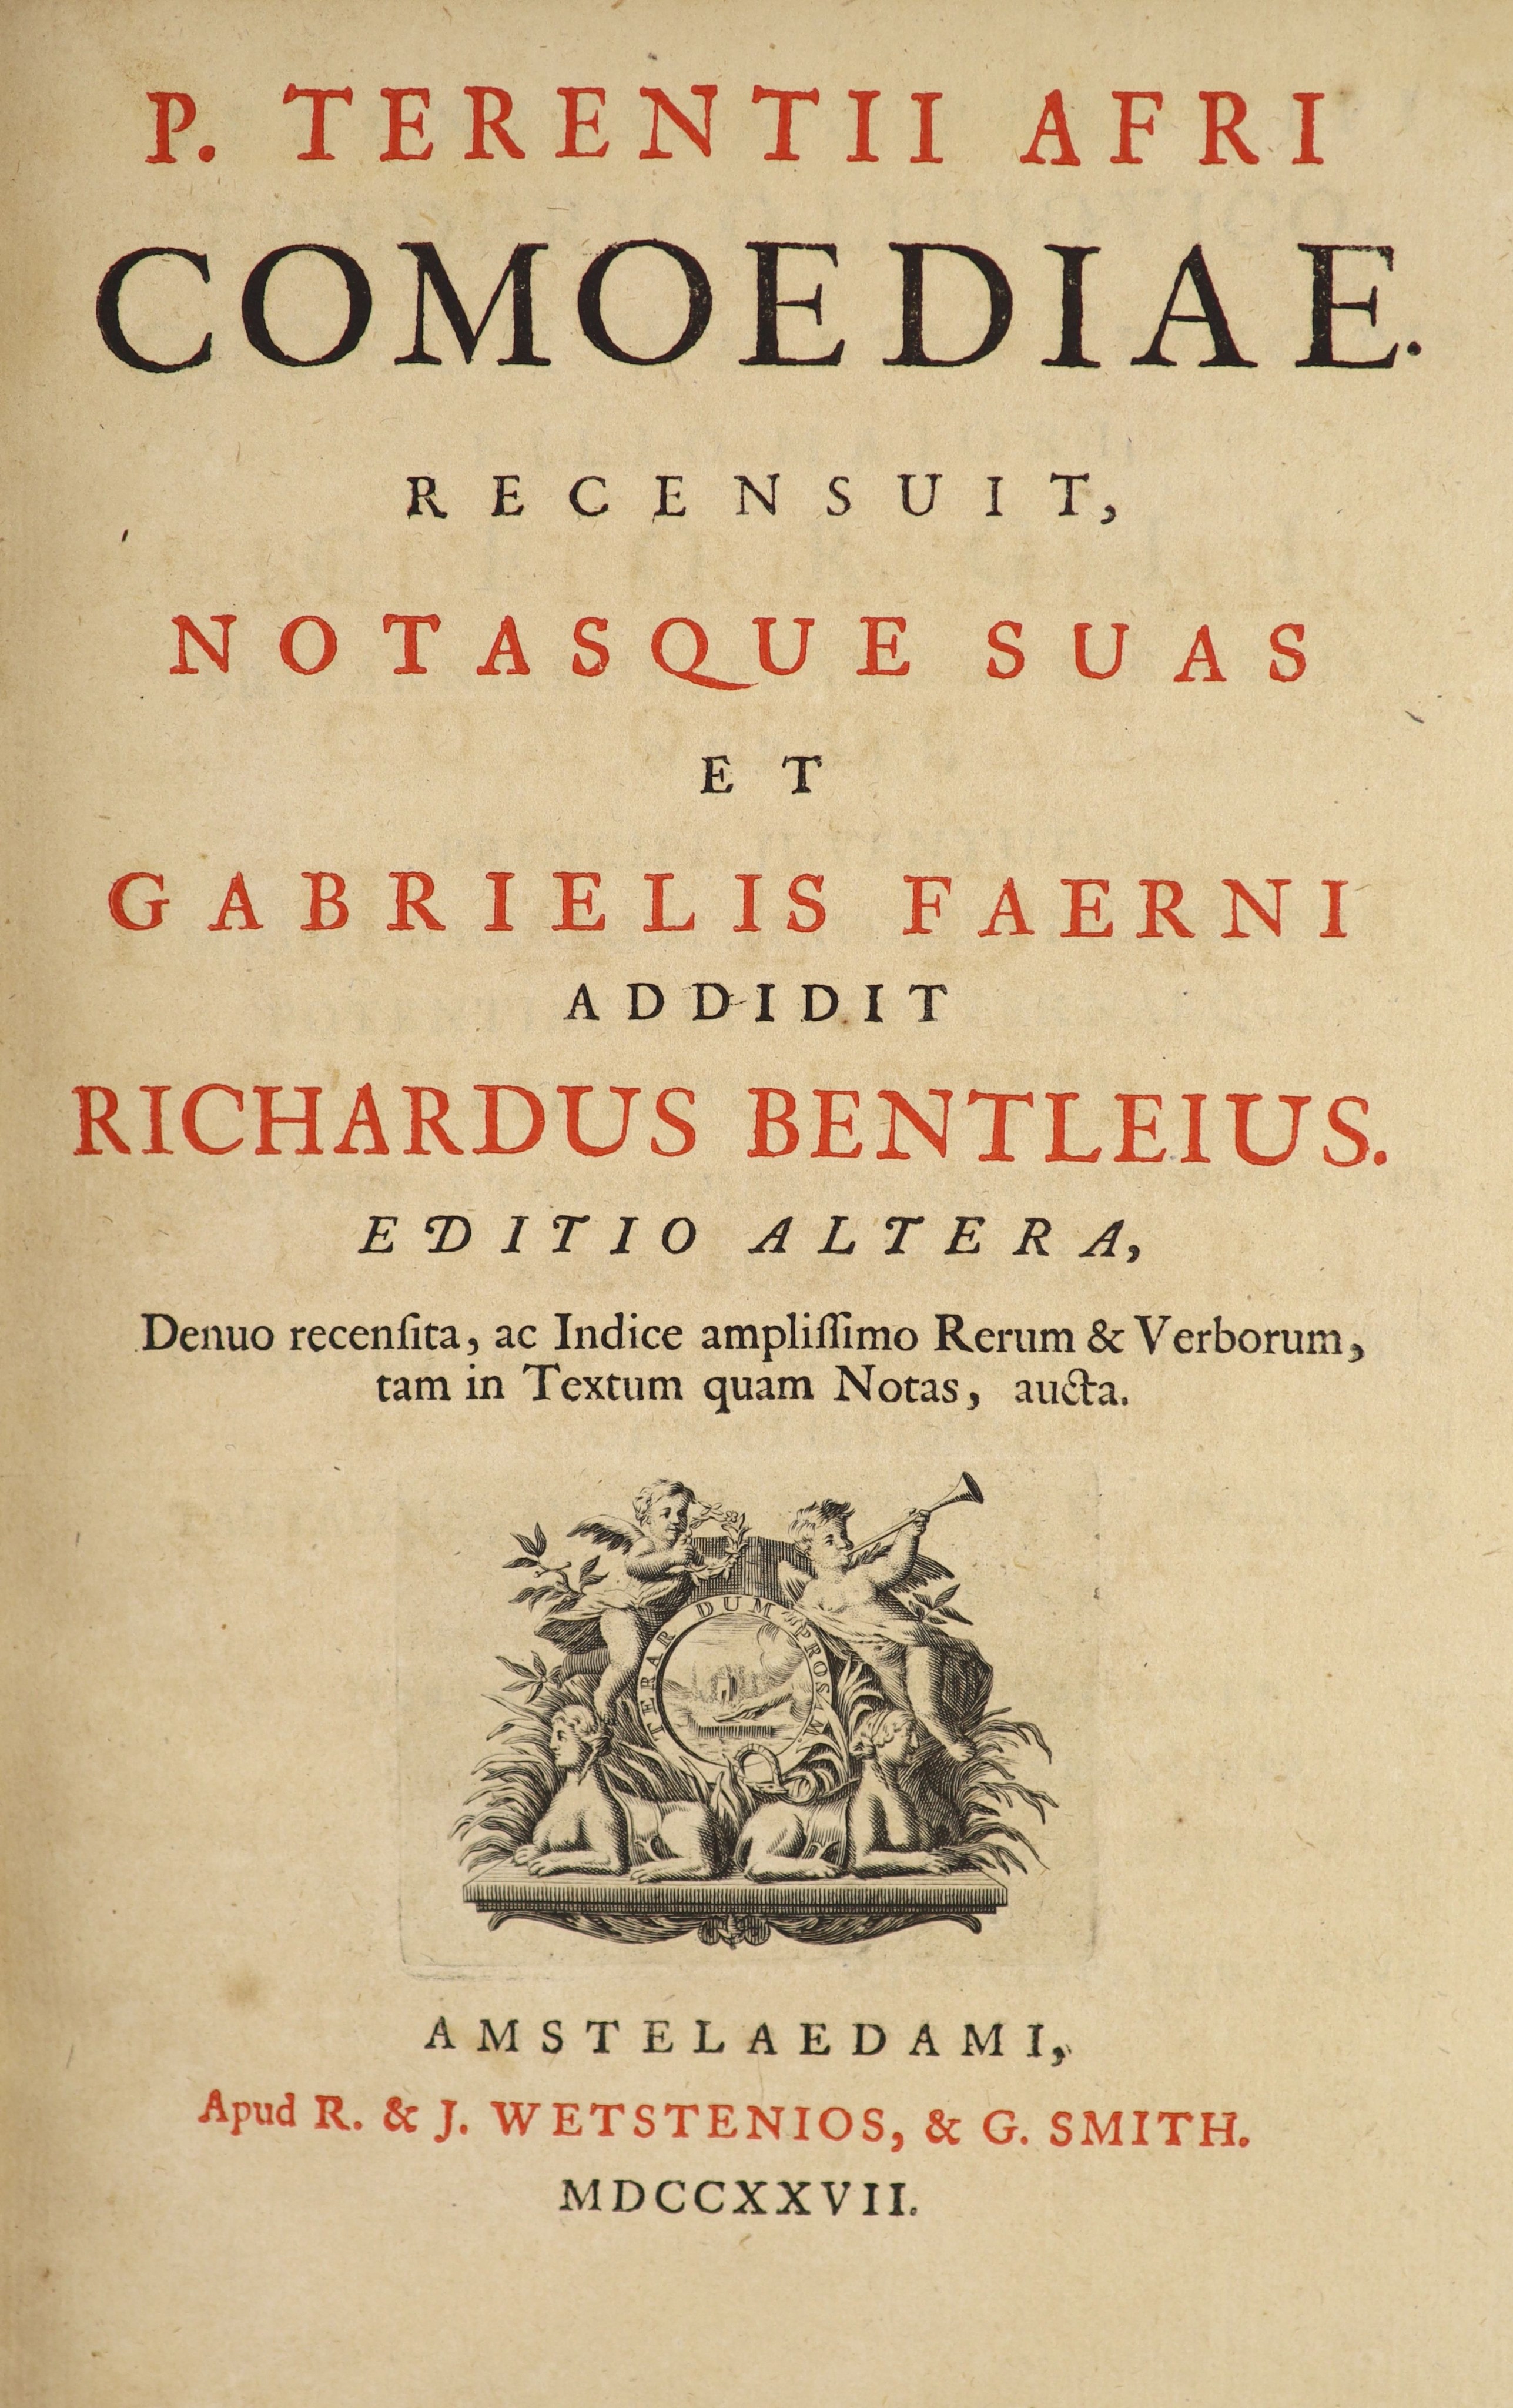 Terence. Comodiae. Recensuit, Notasque Suas et Gabrielis Faerni addidit Richardus Bentleius, editio altera ... 2 vols. in one